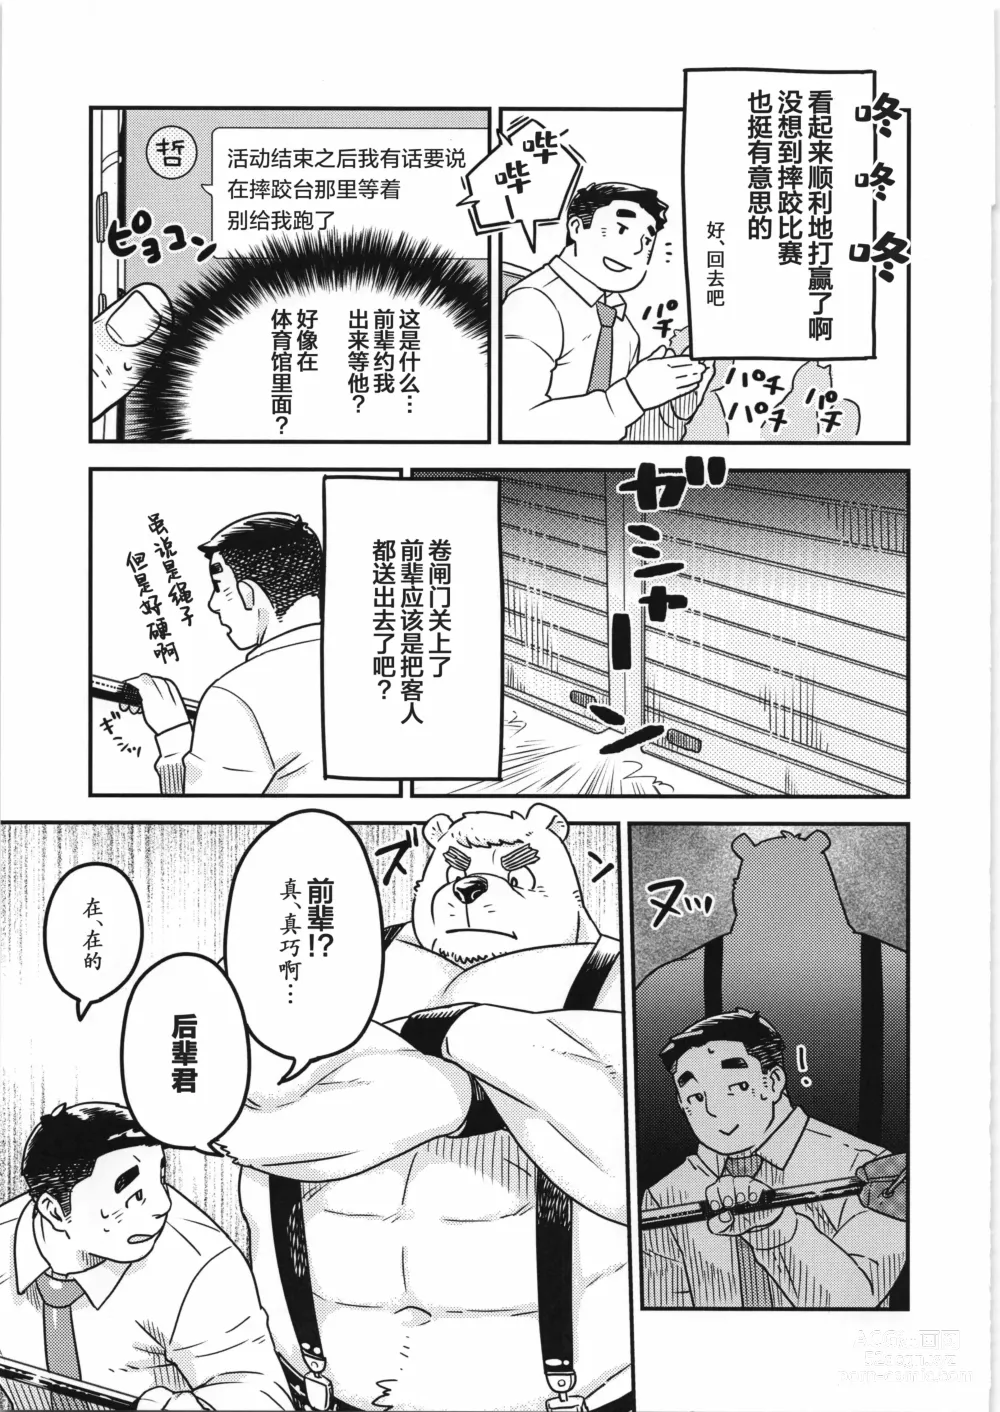 Page 12 of manga CHOGOKIN-004